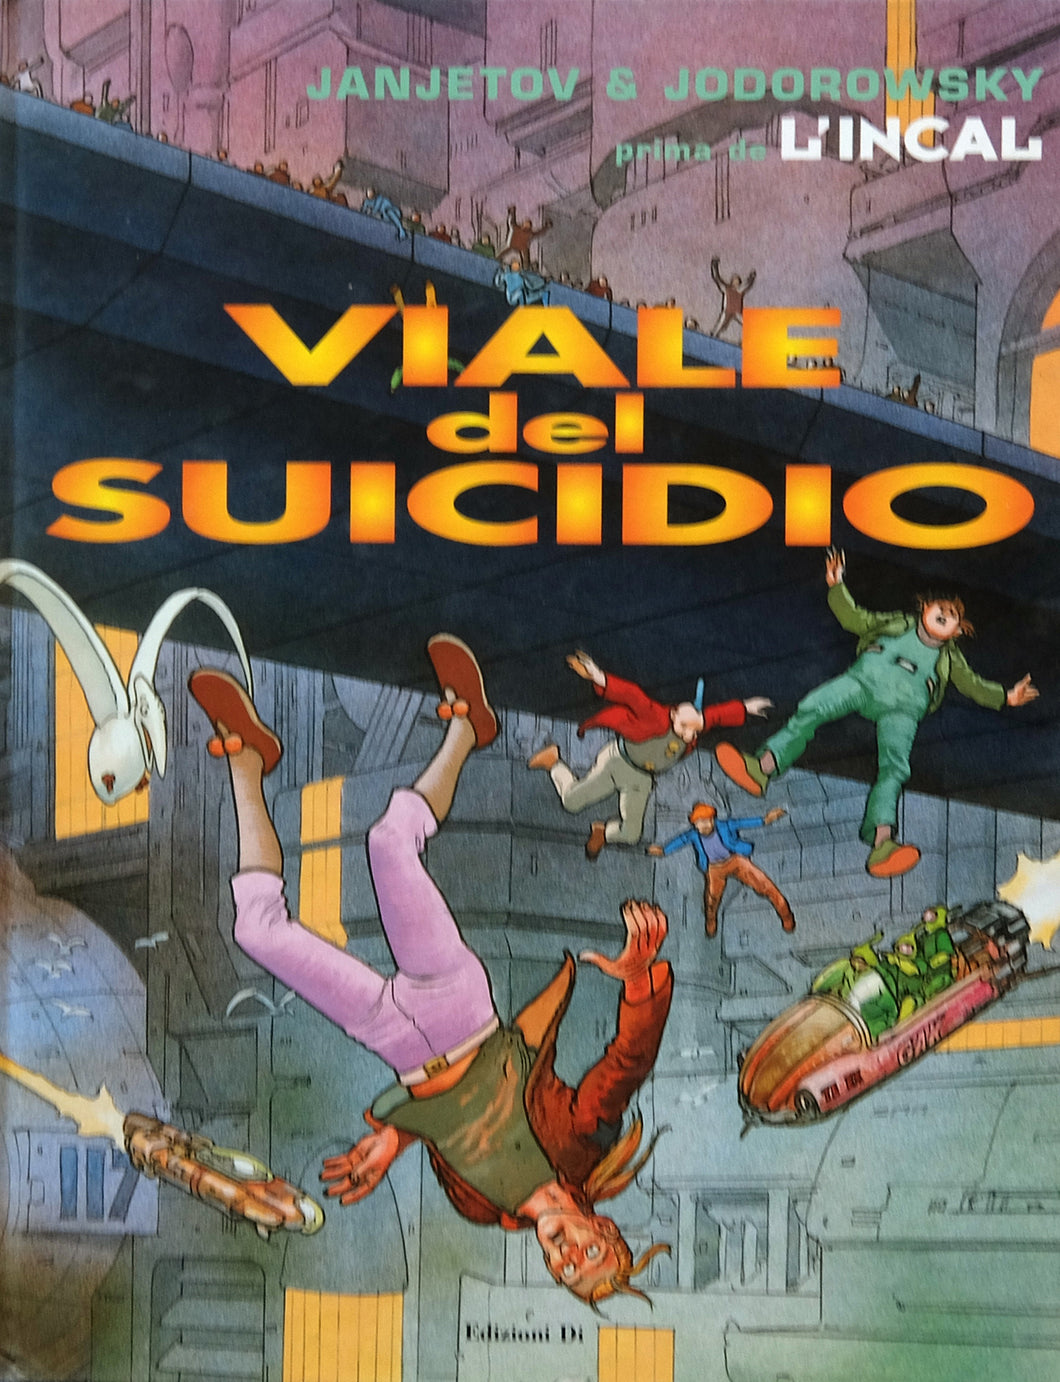 Jodorowsky Janjetov Volume Prima De L' Incal 6 Viale Del Suicidio - Grifo Edizioni